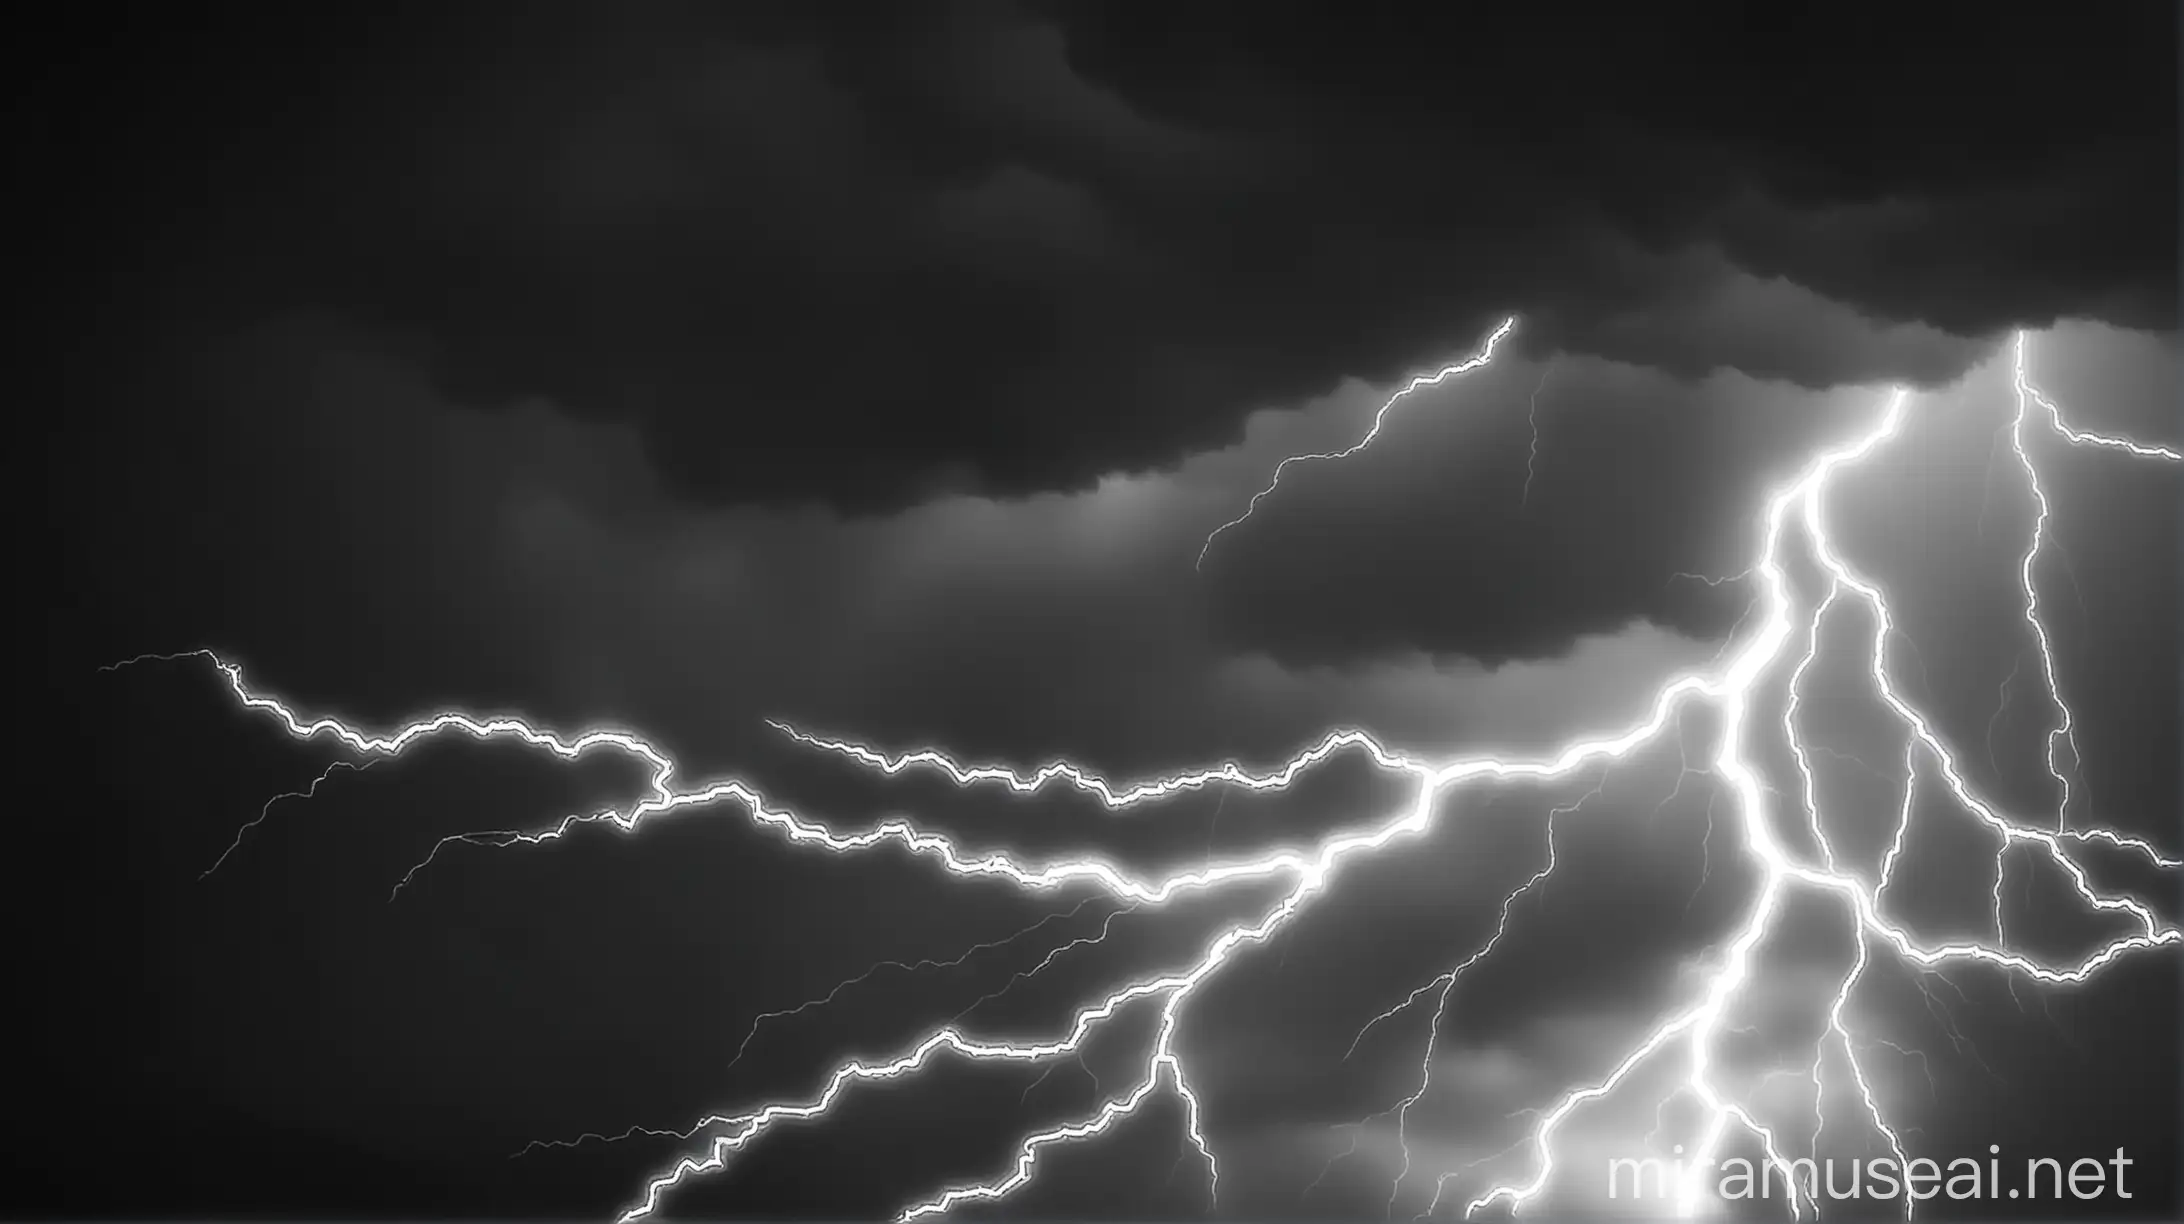 Black and white background, lightning streaks across the sky